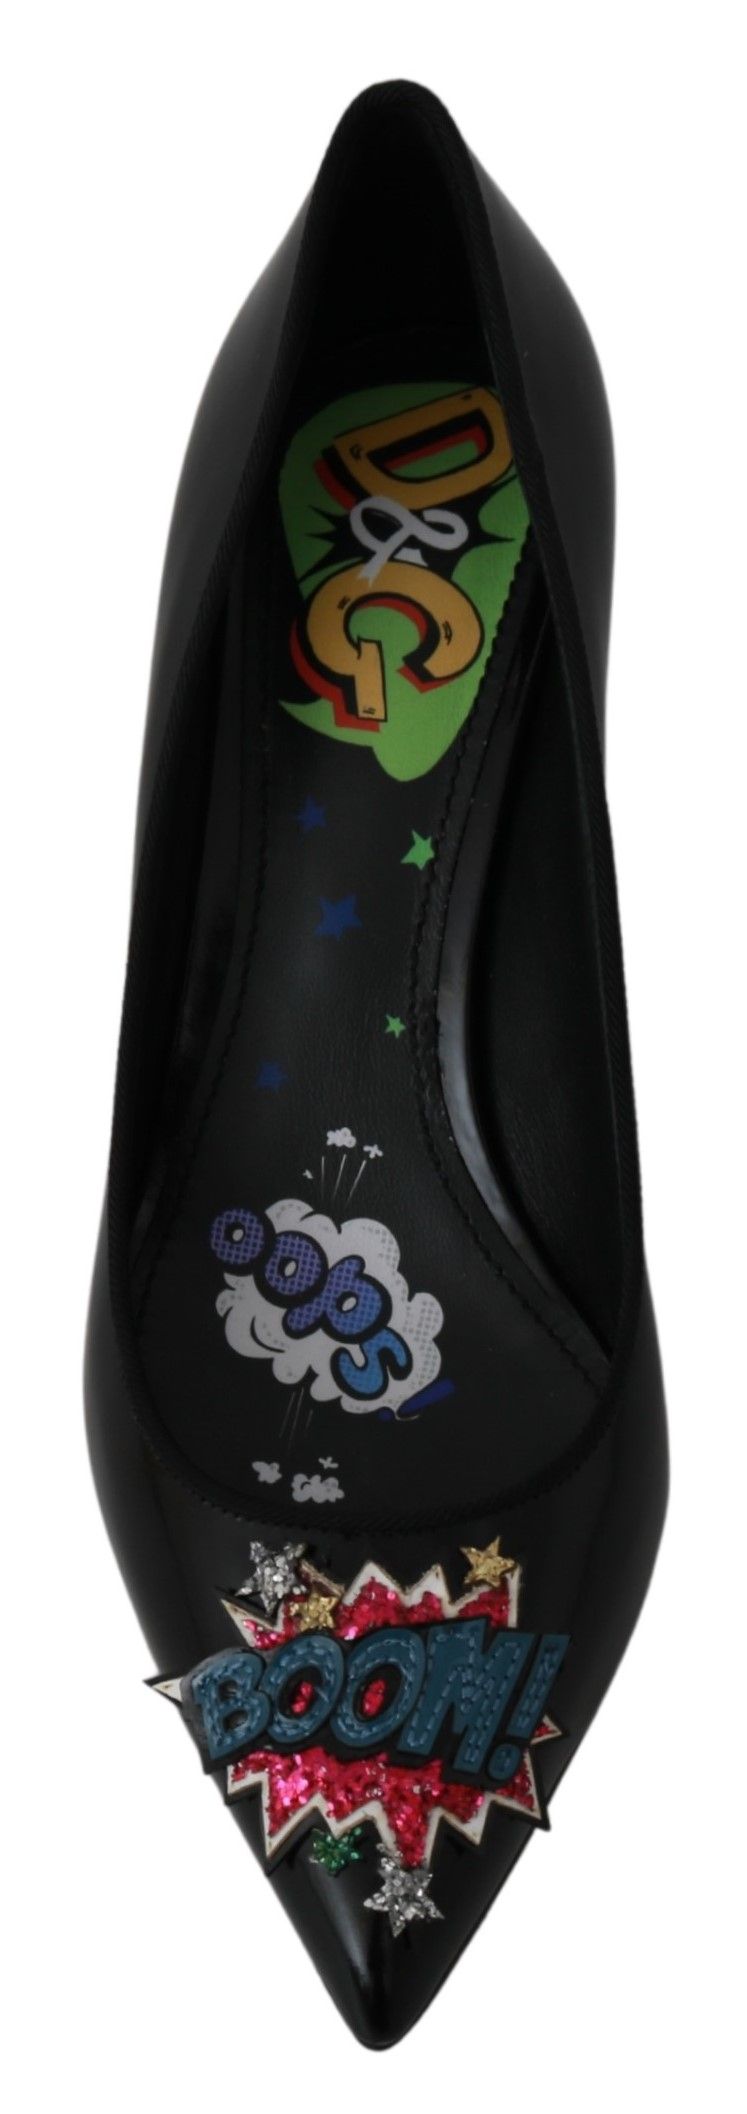 Elegant Black Embroidered Heels Pumps